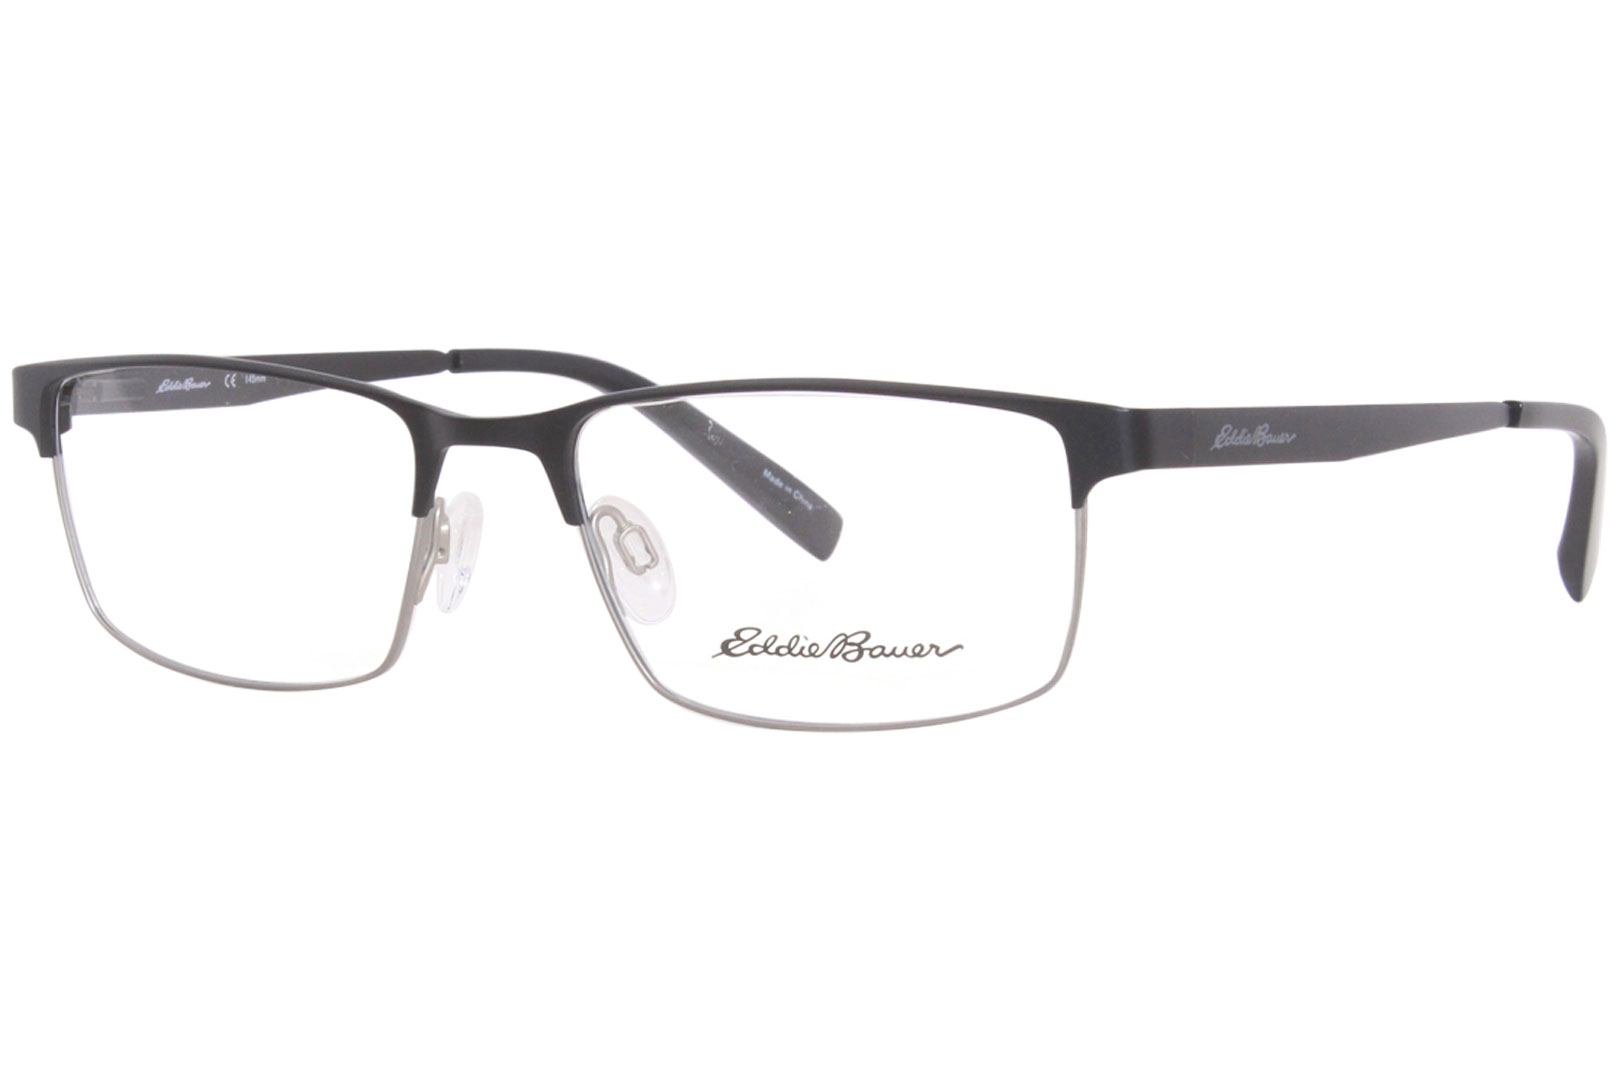 Eddie Bauer EB32030 BK Titanium Eyeglasses Men's Black Full Rim 56-18 ...